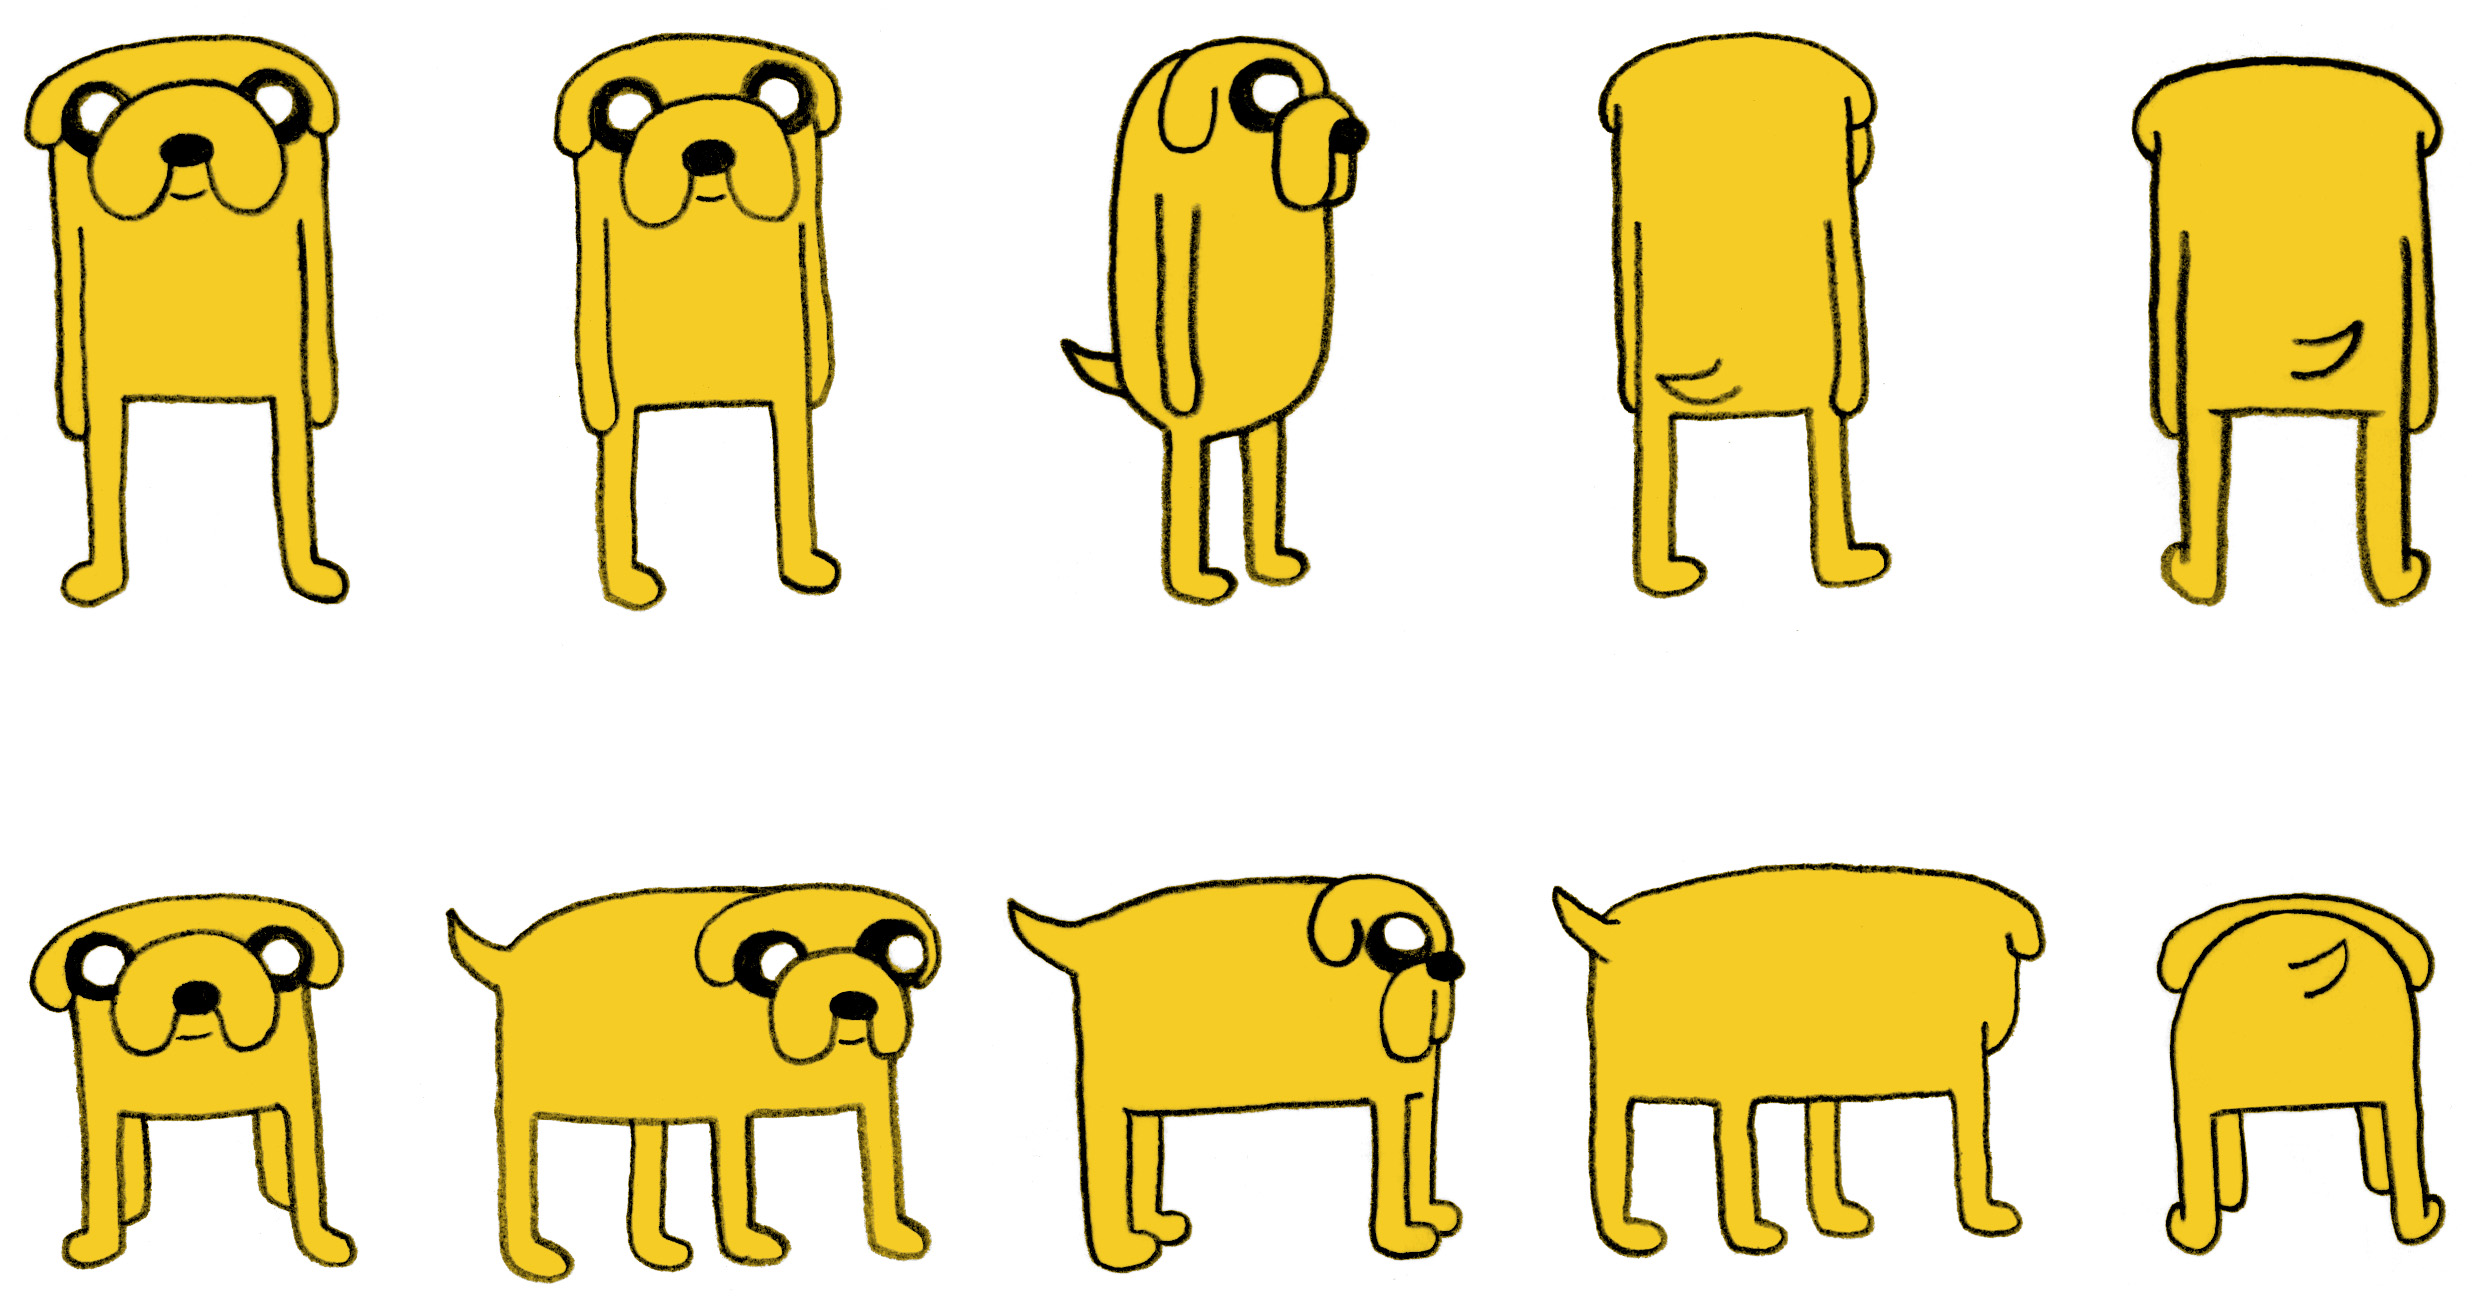 The Best Jake, Personaje De La Hora De Aventura Wallpaper - Jake The Dog - HD Wallpaper 